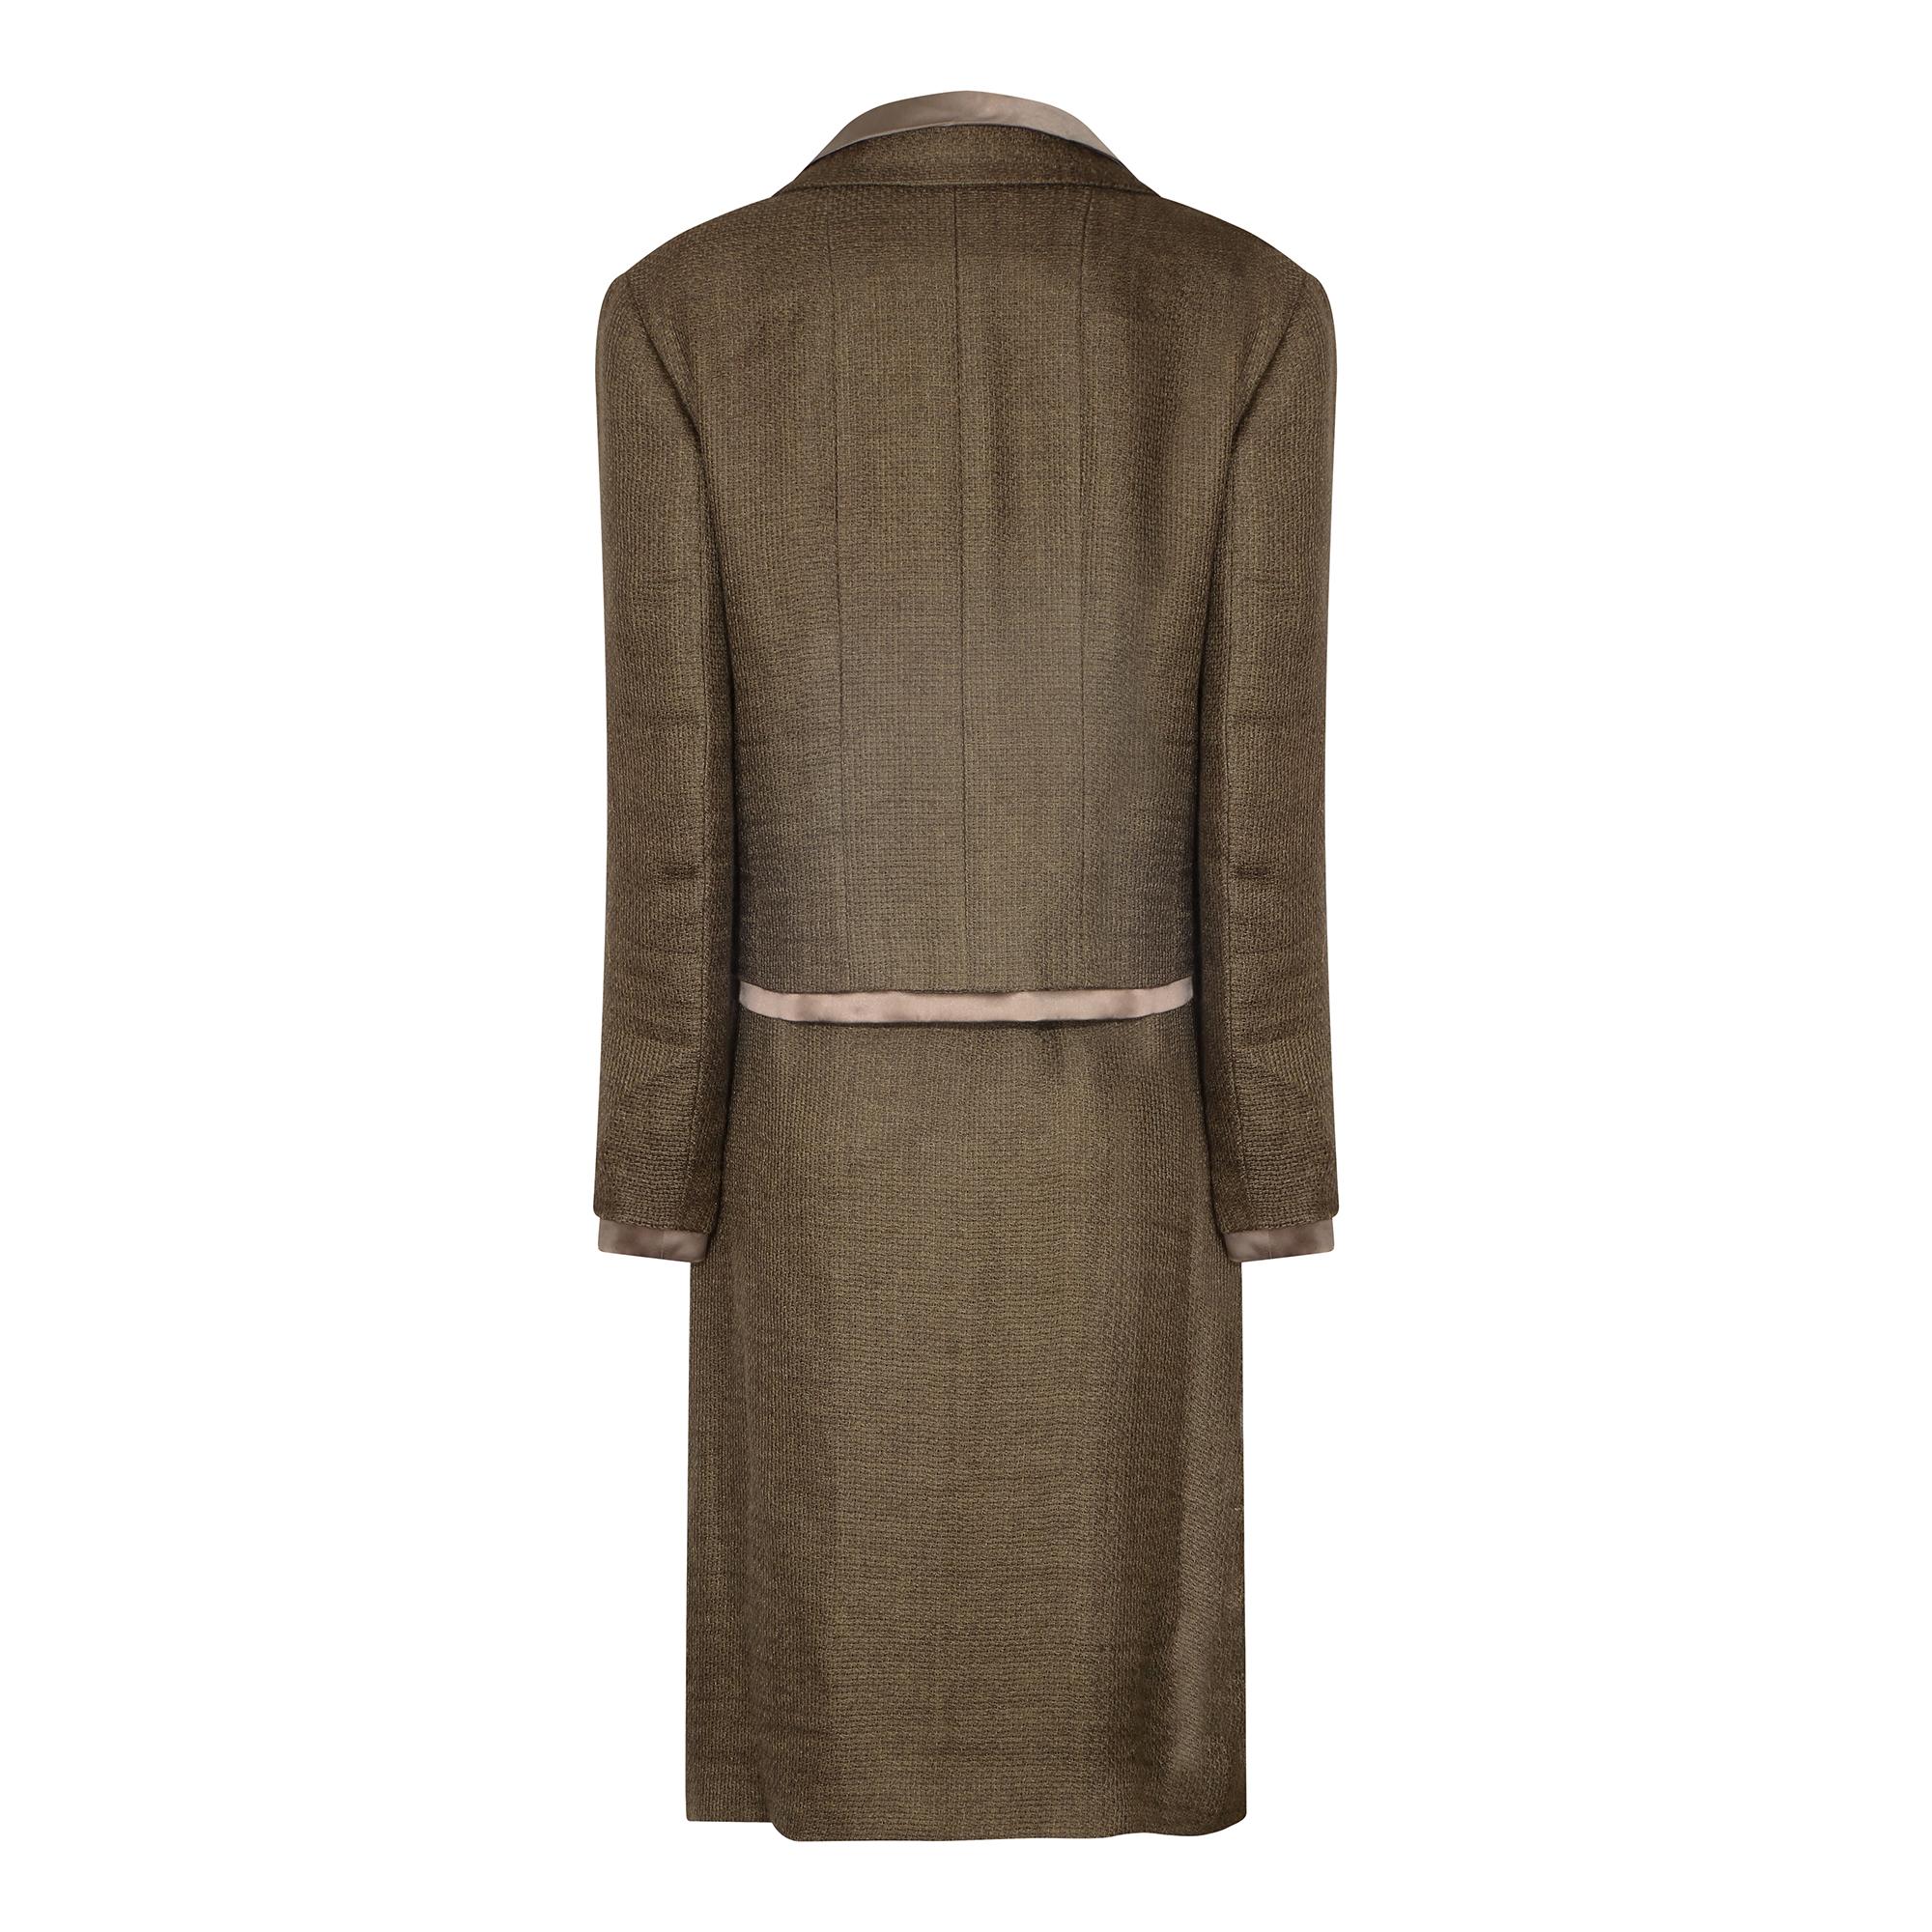 Voici un look sophistiqué de la collection automne/hiver 1999 de Chanel, composé d'un ensemble de trois pièces (jupe, veste et caraco).  La veste croisée en tweed avec deux poches plaquées et la jupe à nouer au genou sont composées d'un mélange de